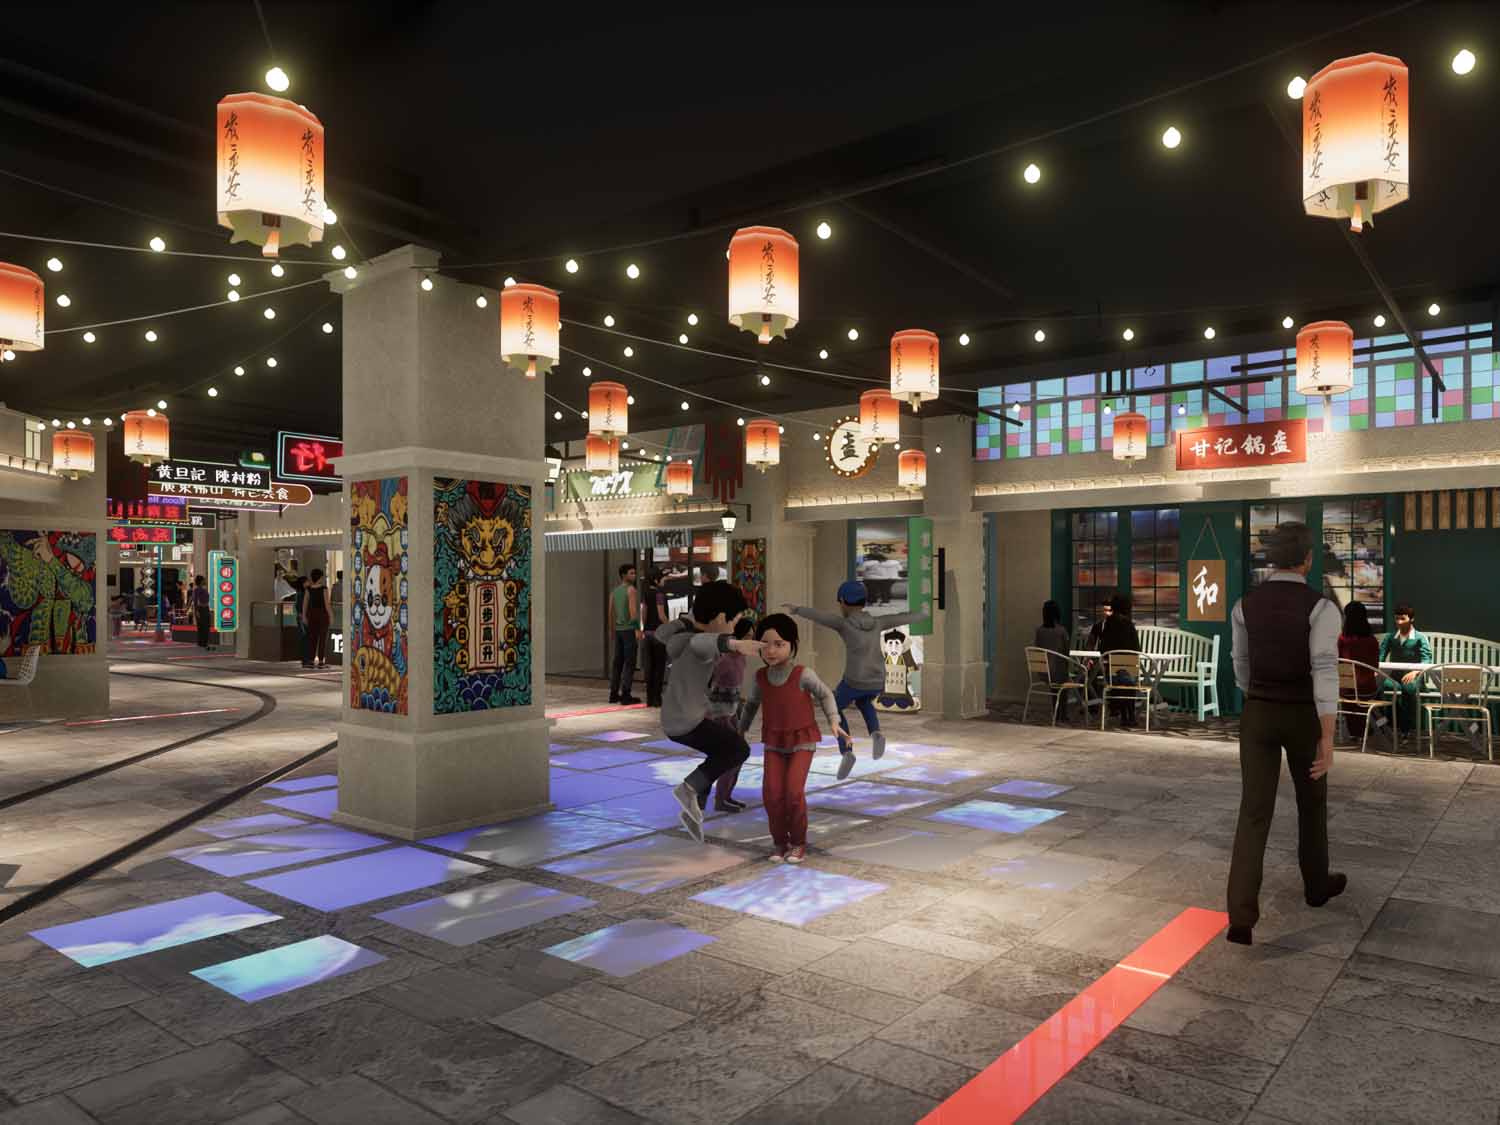 佛山月星环球港·美味行主题街区 | 派沃商业设计